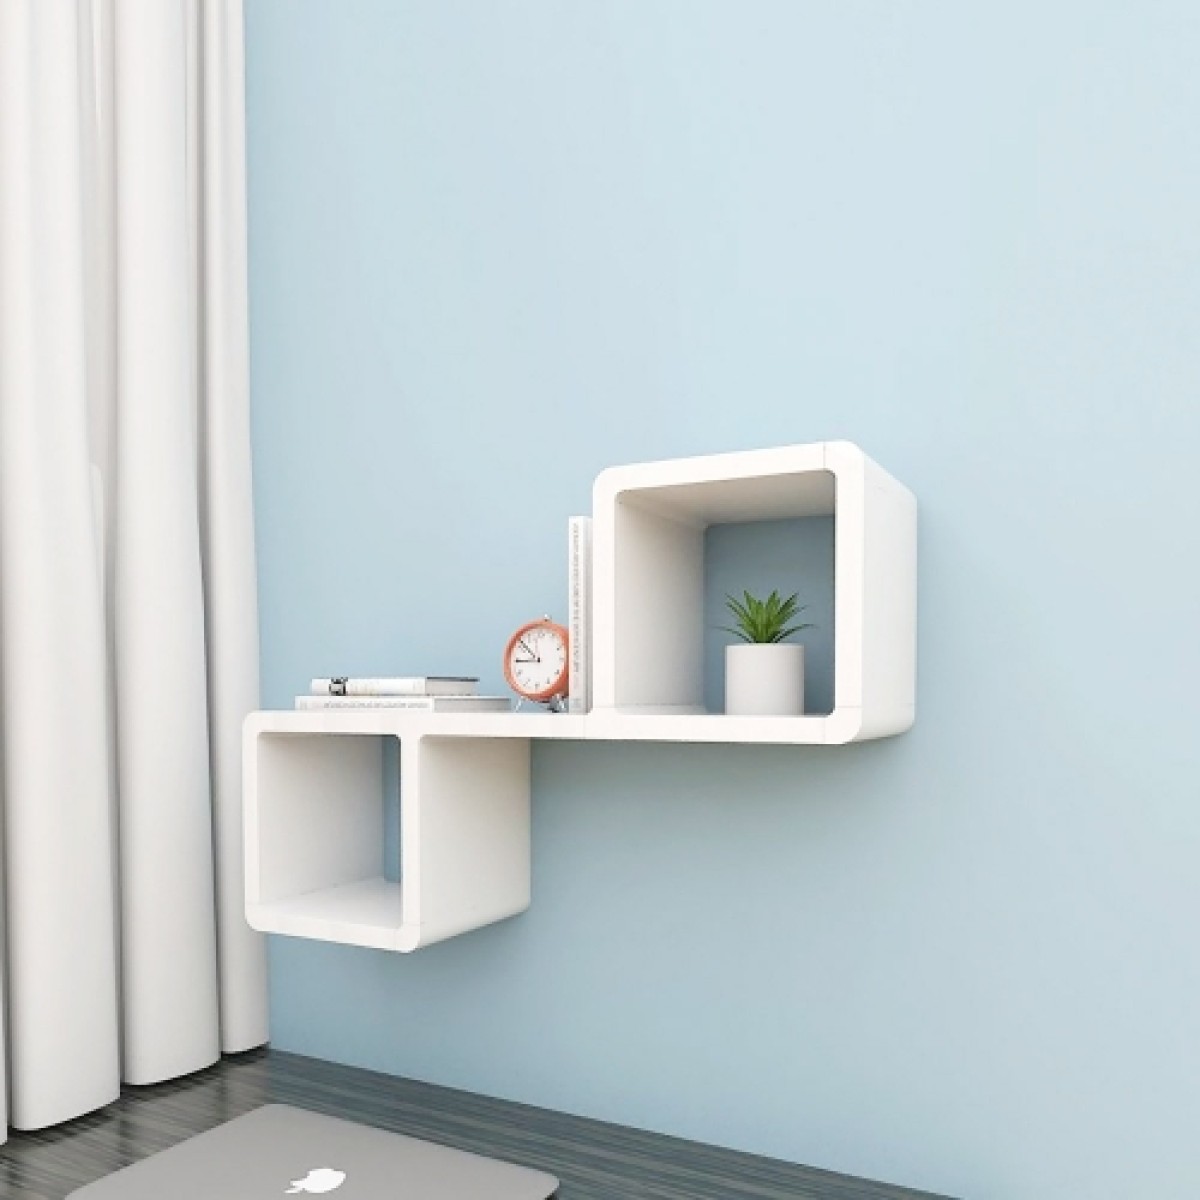 Cubics 2 wall shelf F